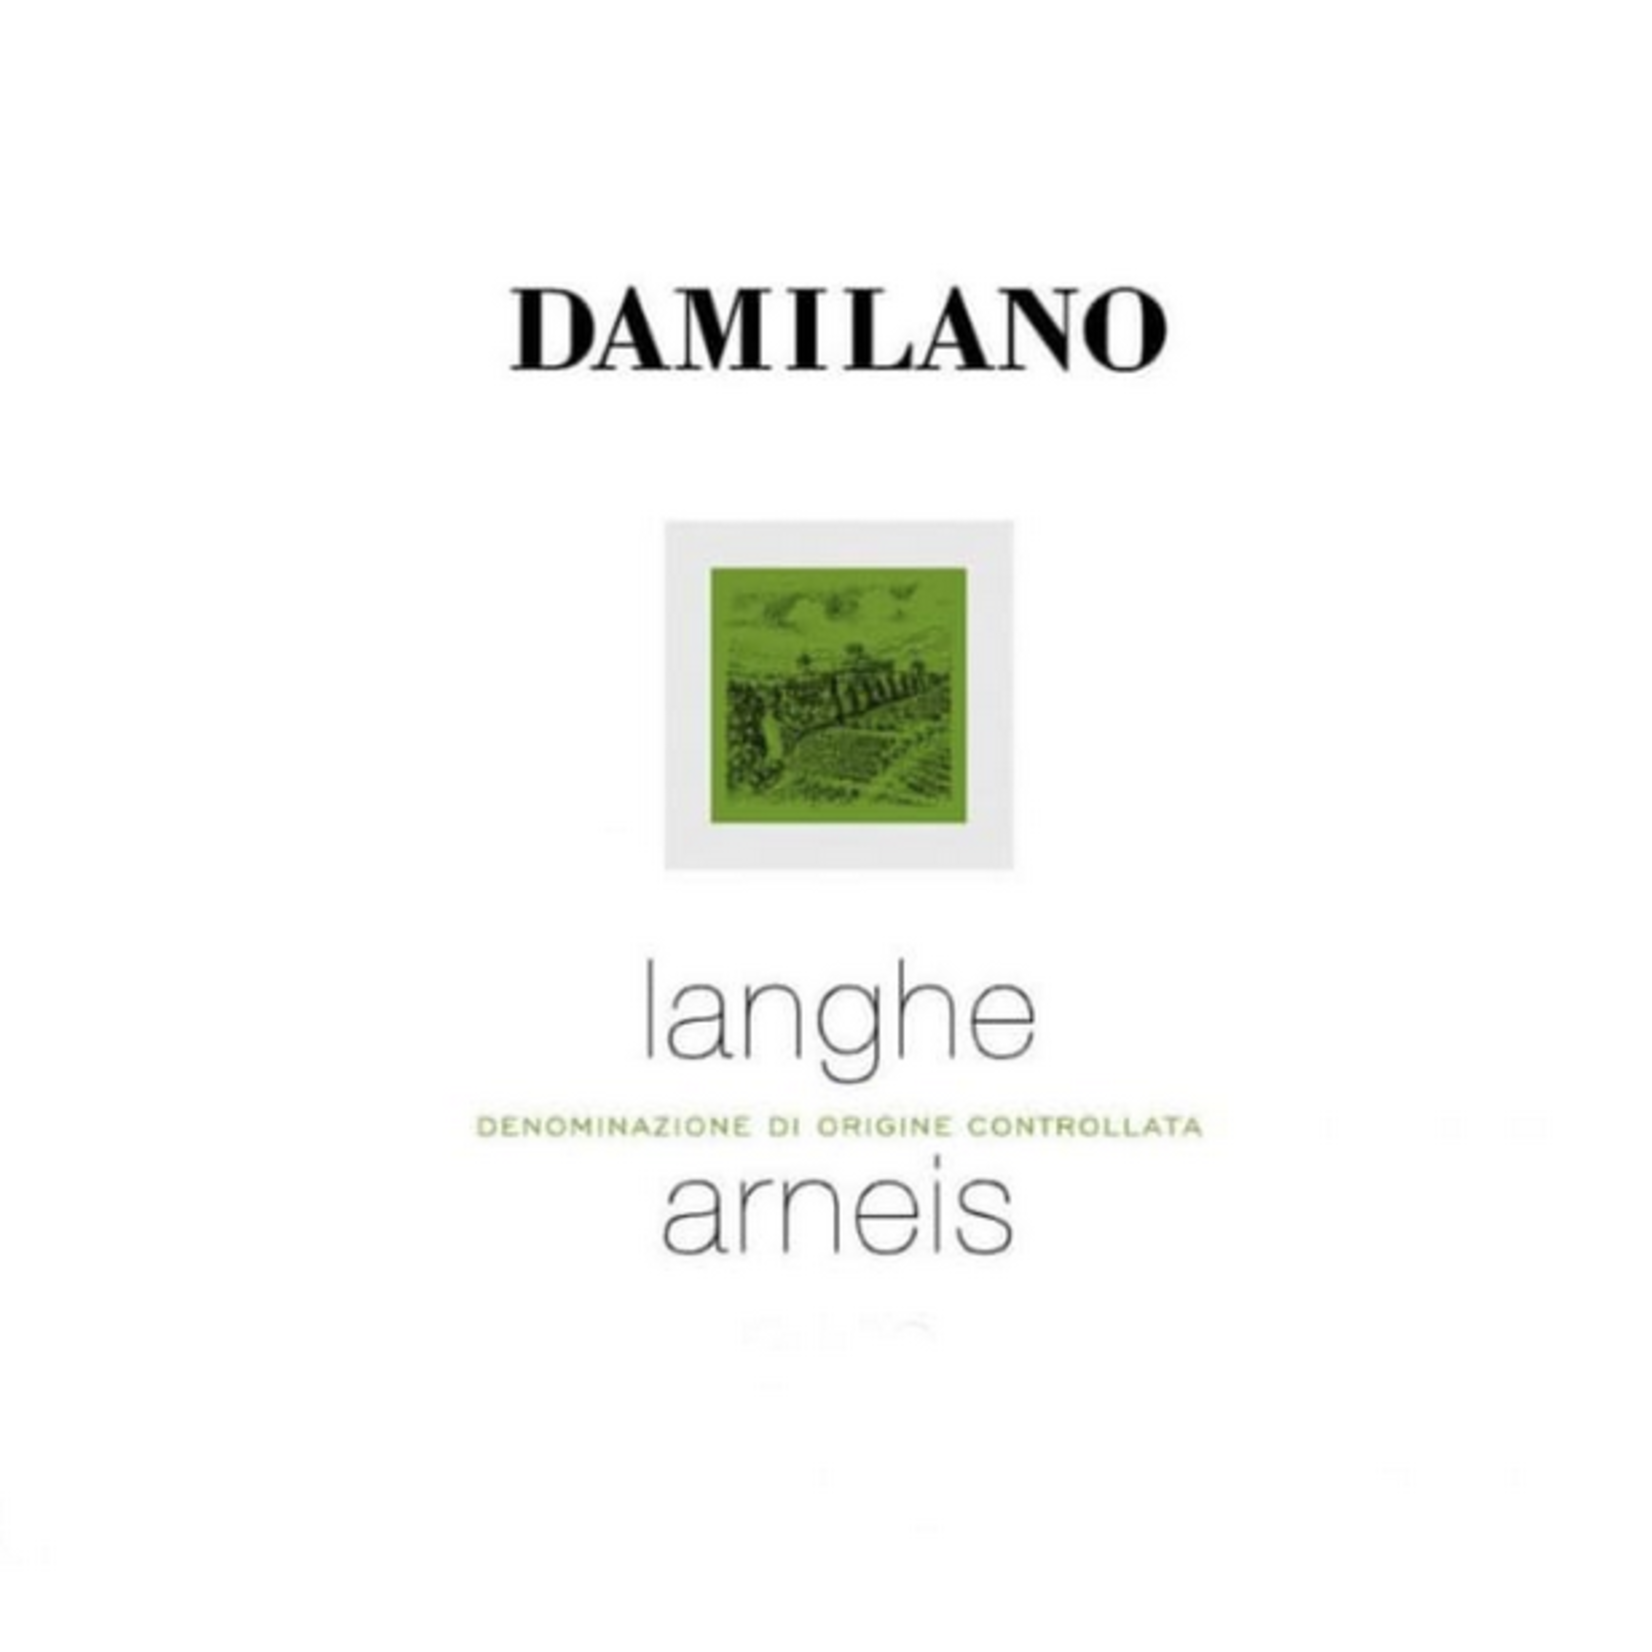 Damilano Damilano Arneis 2020  Piedmont, Italy